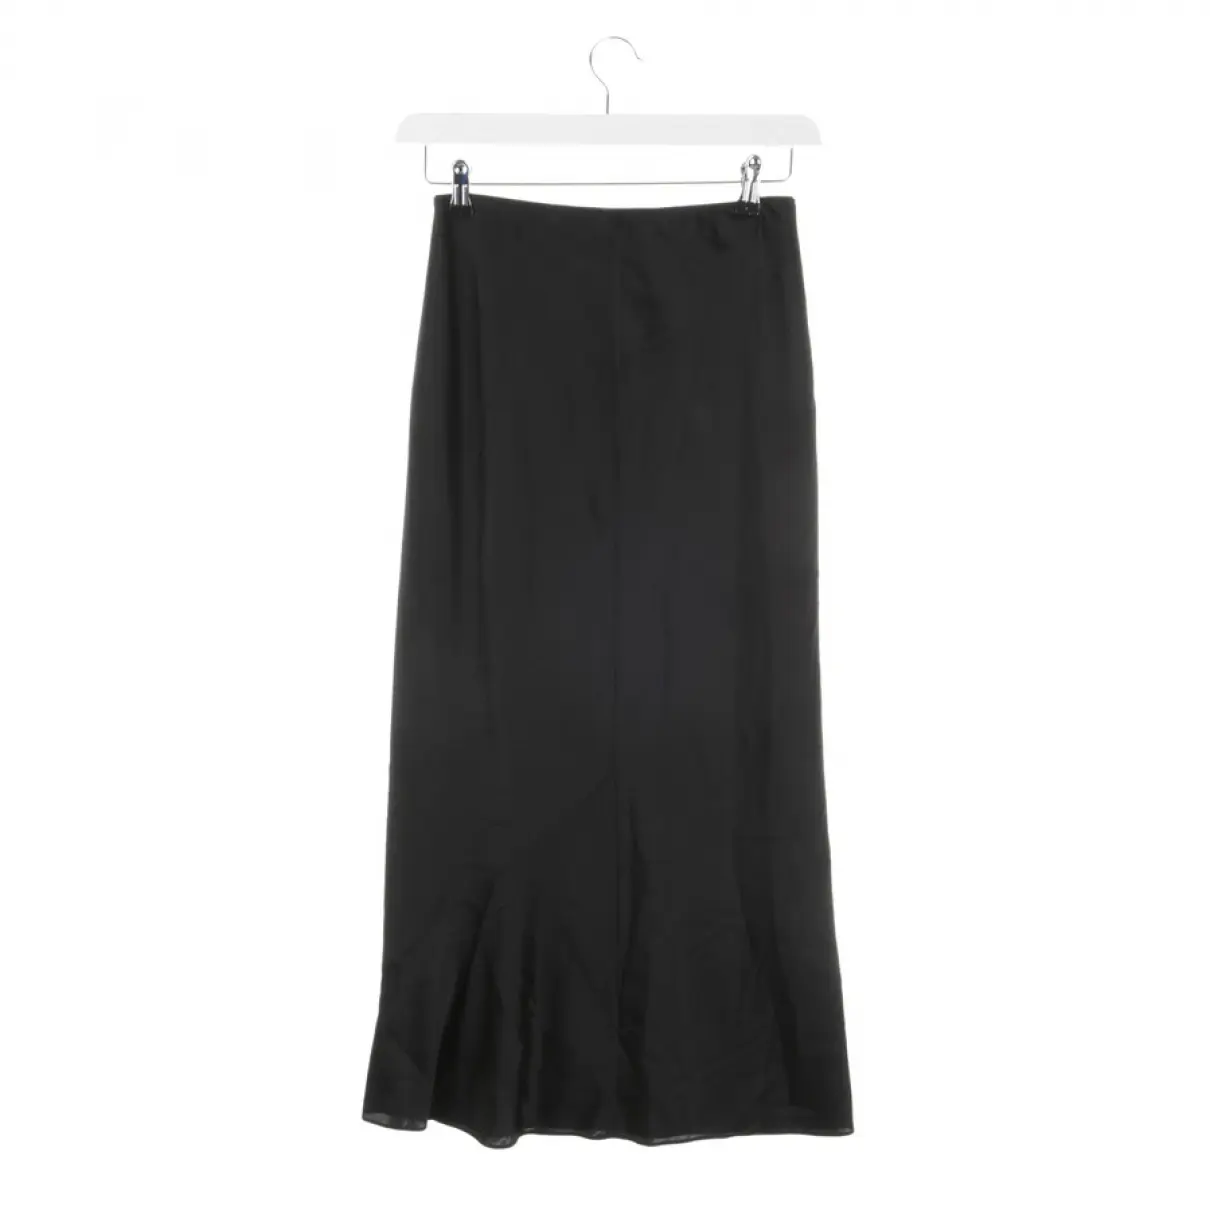 Buy Dorothee Schumacher Silk skirt online